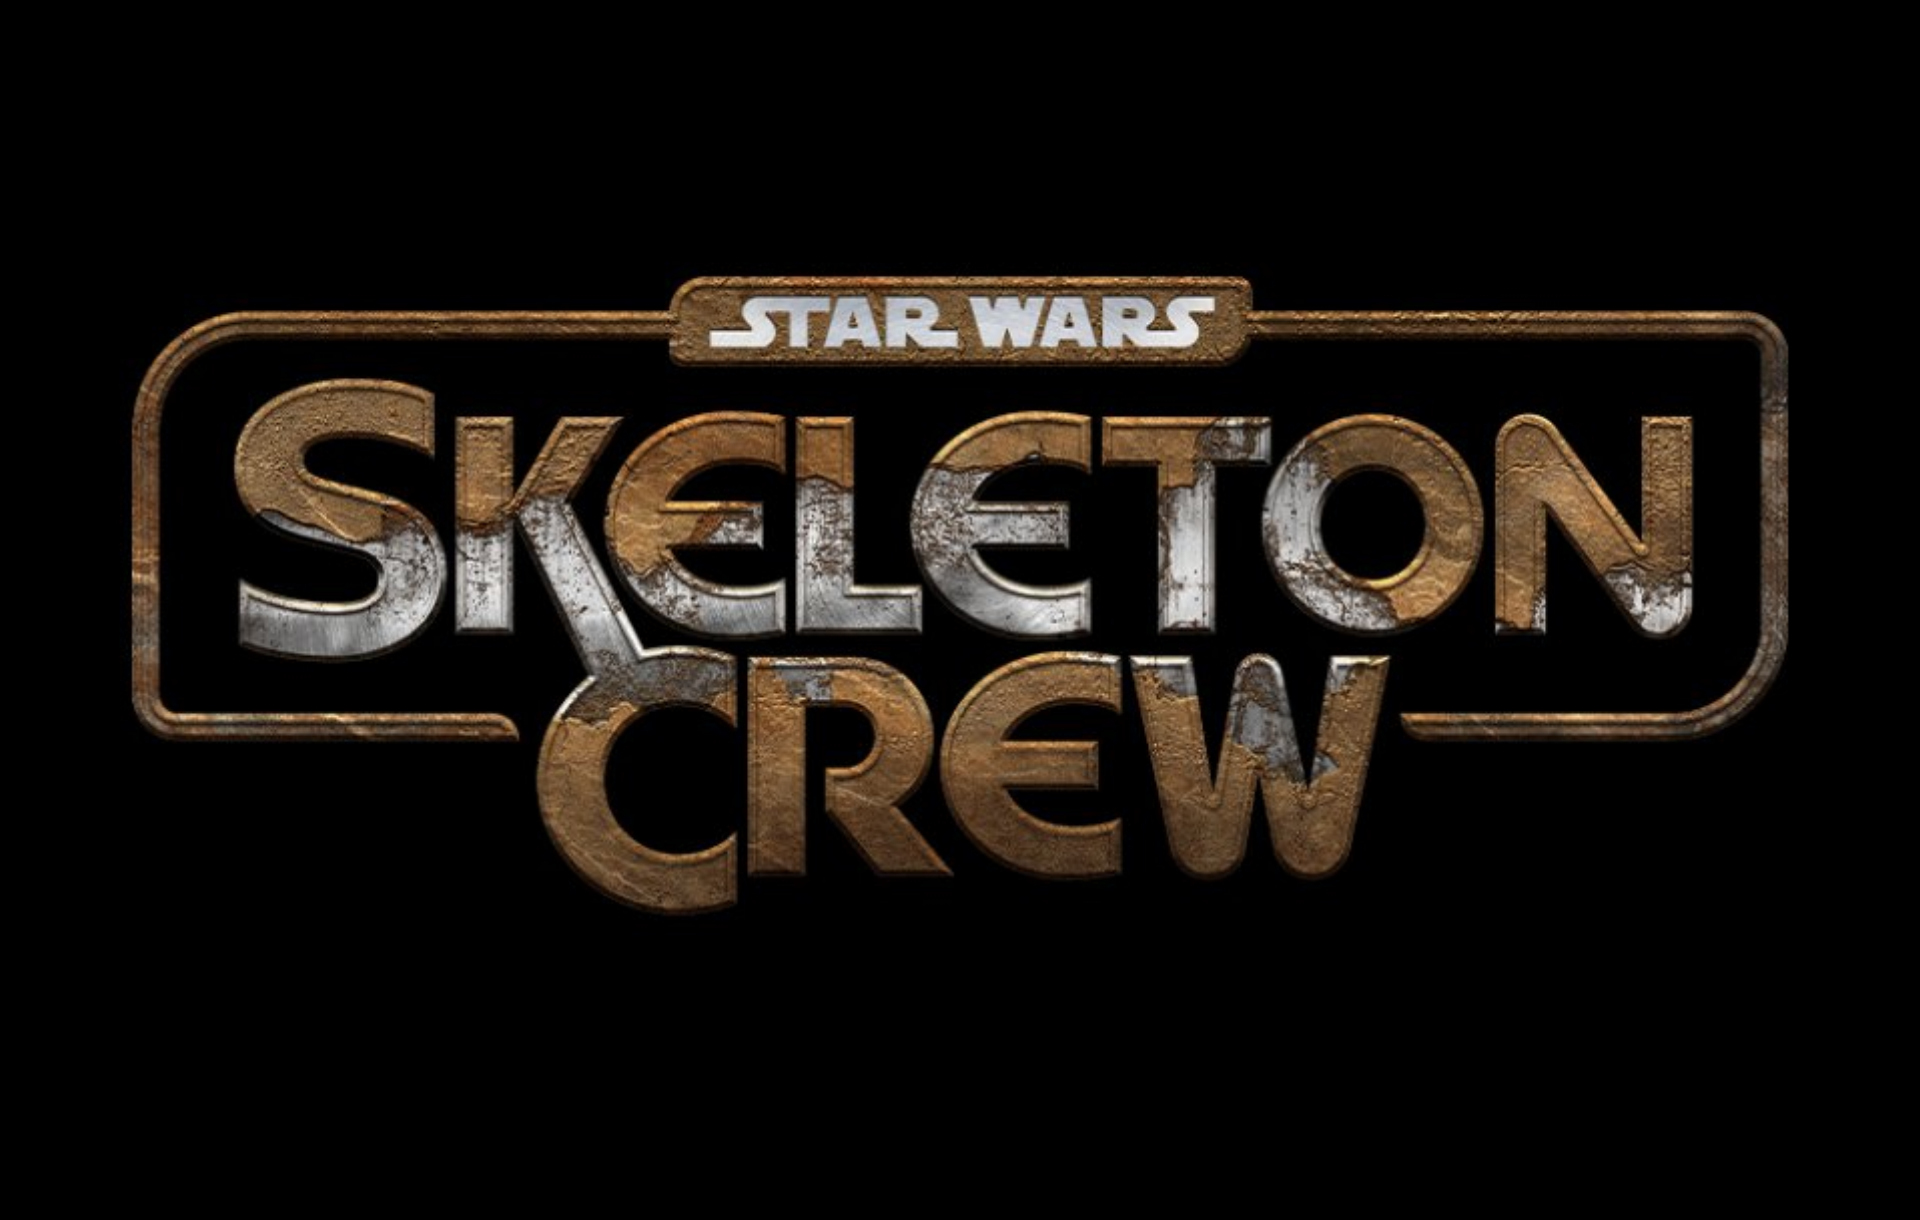 Skeleton crew. Skeleton Crew Star Wars. Звездные войны: команда скелетов. Star Wars Skeleton Crew Джуд Лоу. Star Wars Skeleton Crew кадры kinorium.